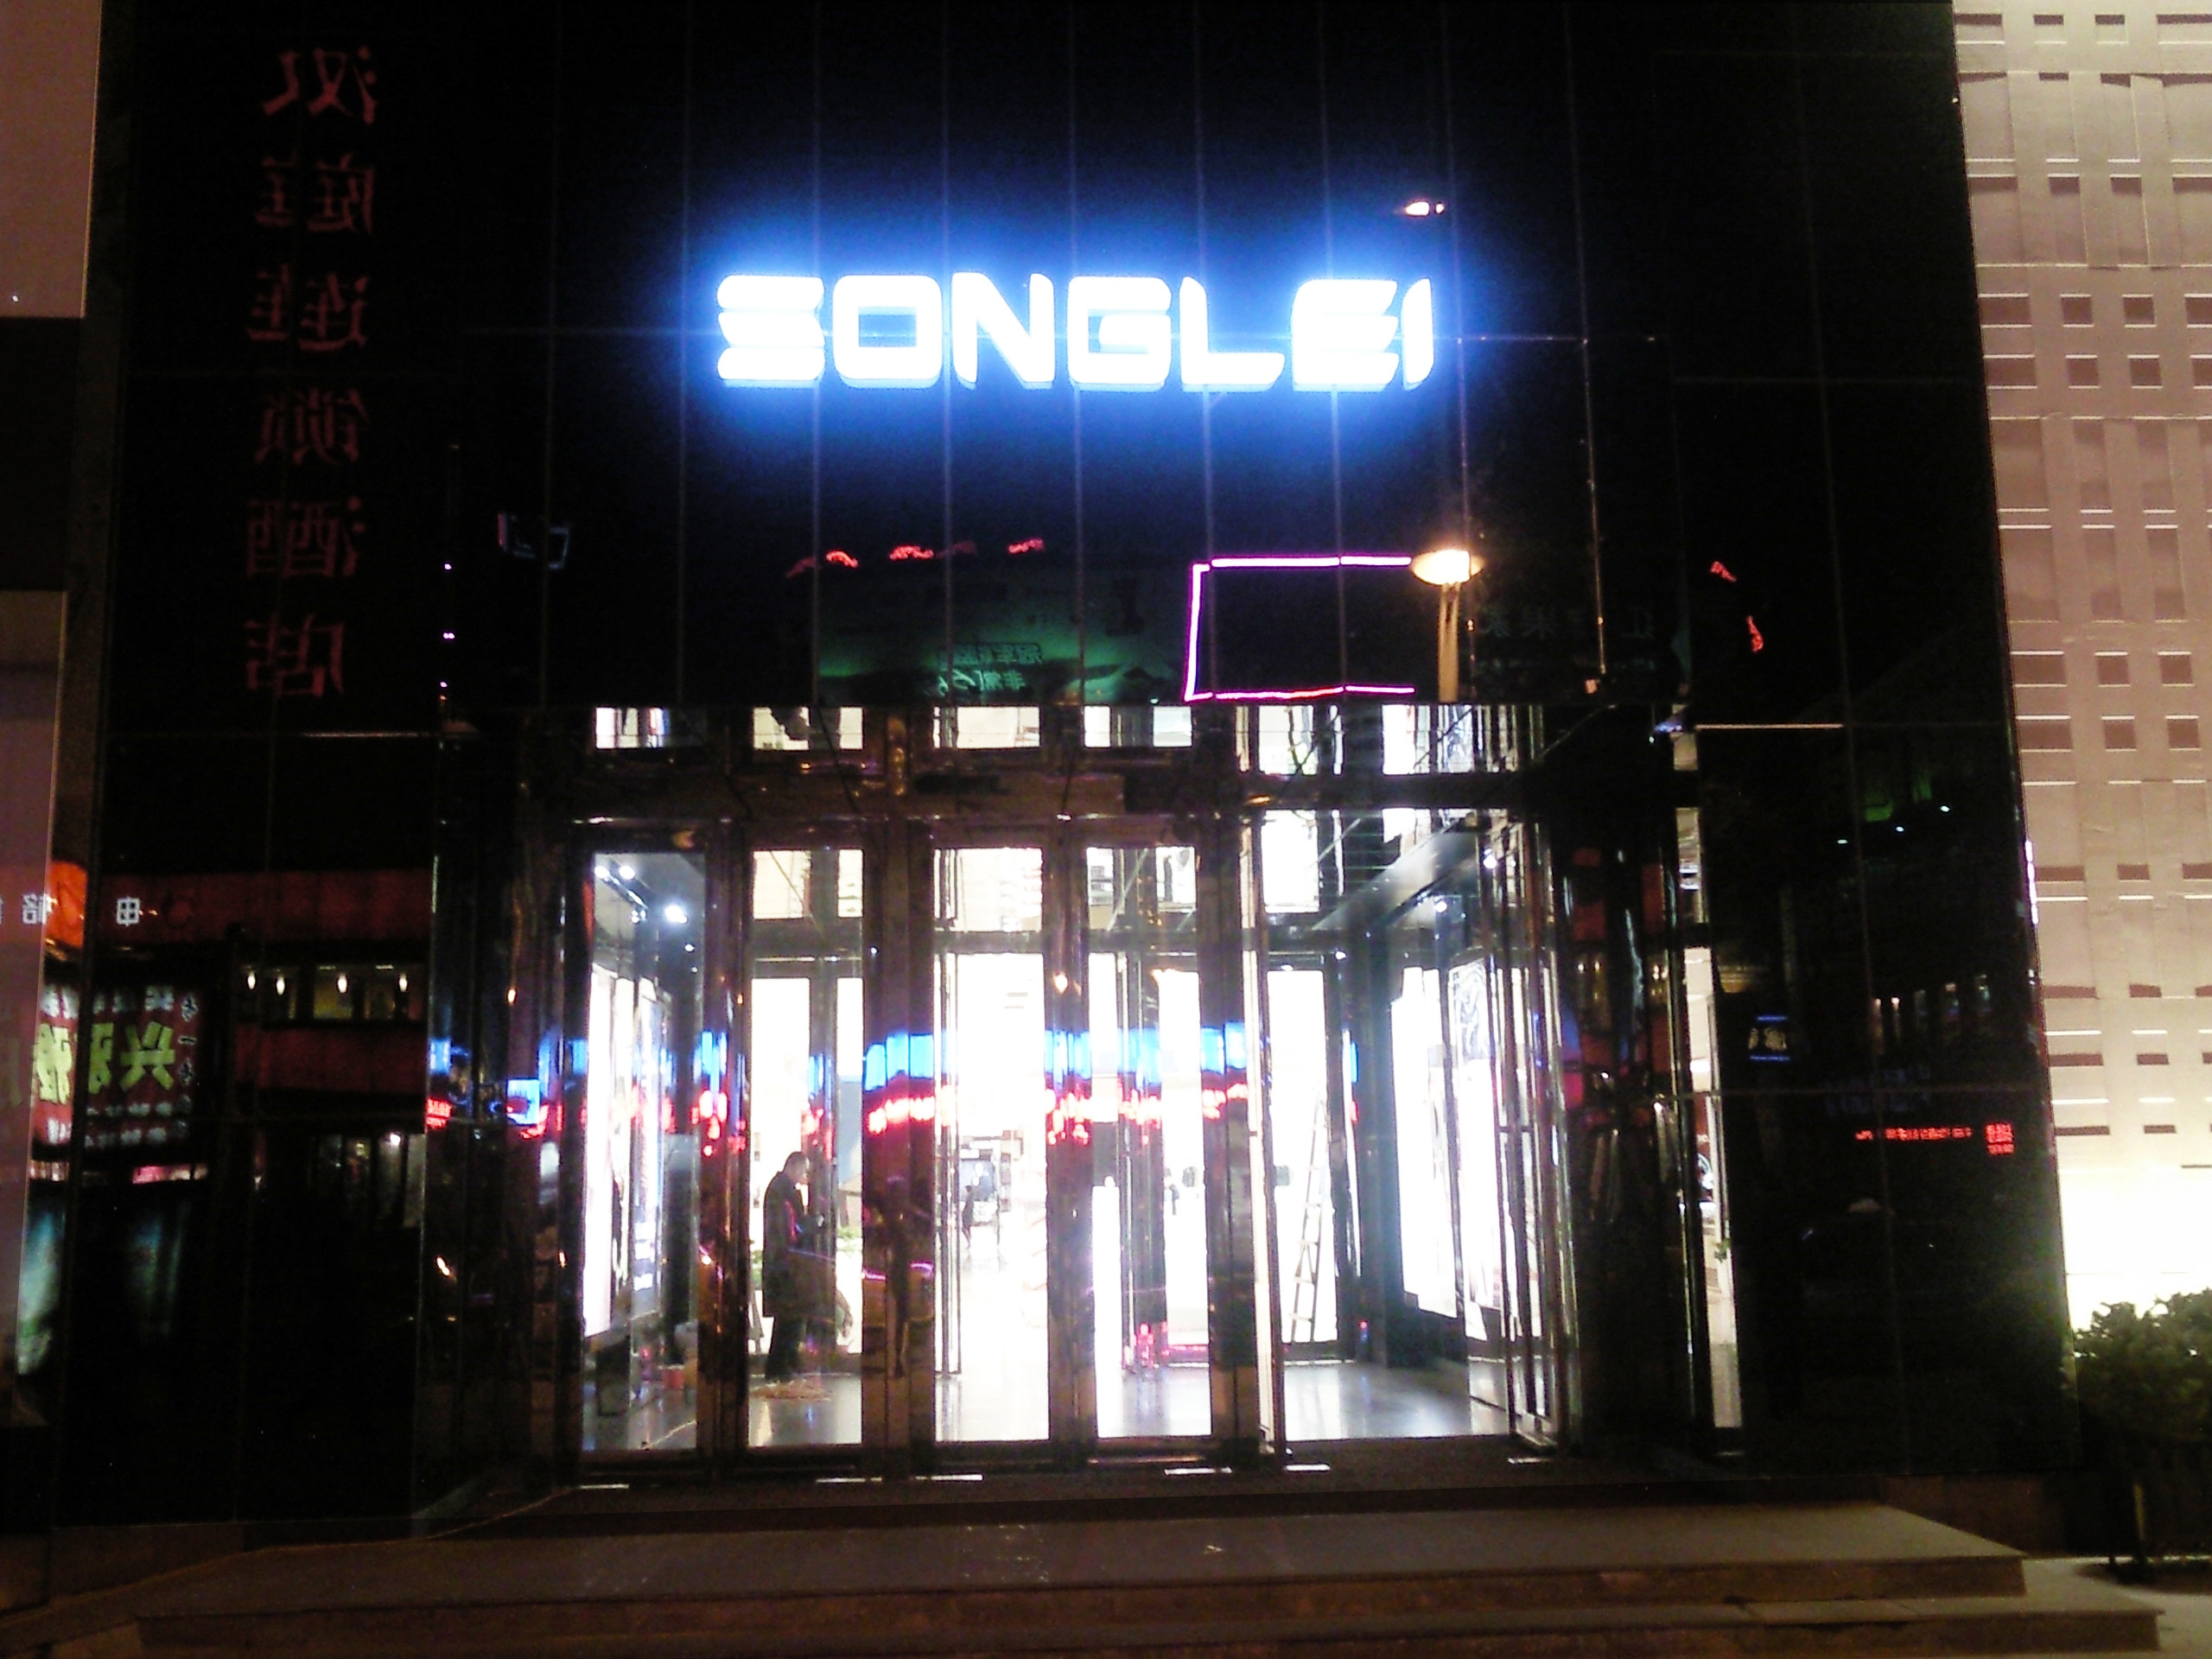 Nuova facciata - Centro Commerciale Songlei